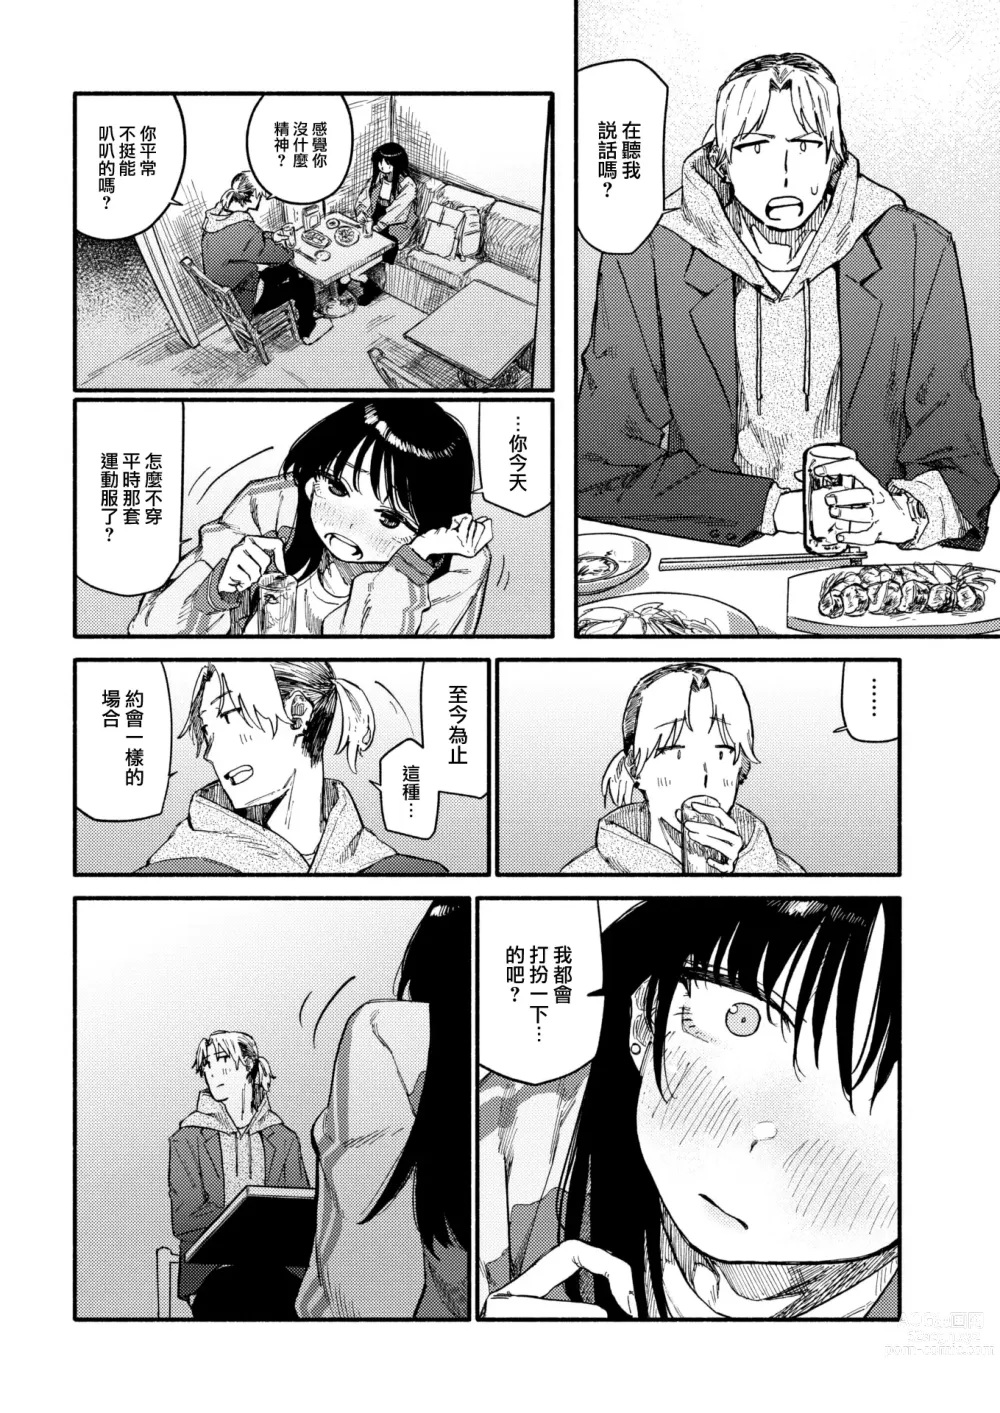 Page 9 of manga Zokusetsu desu ga....